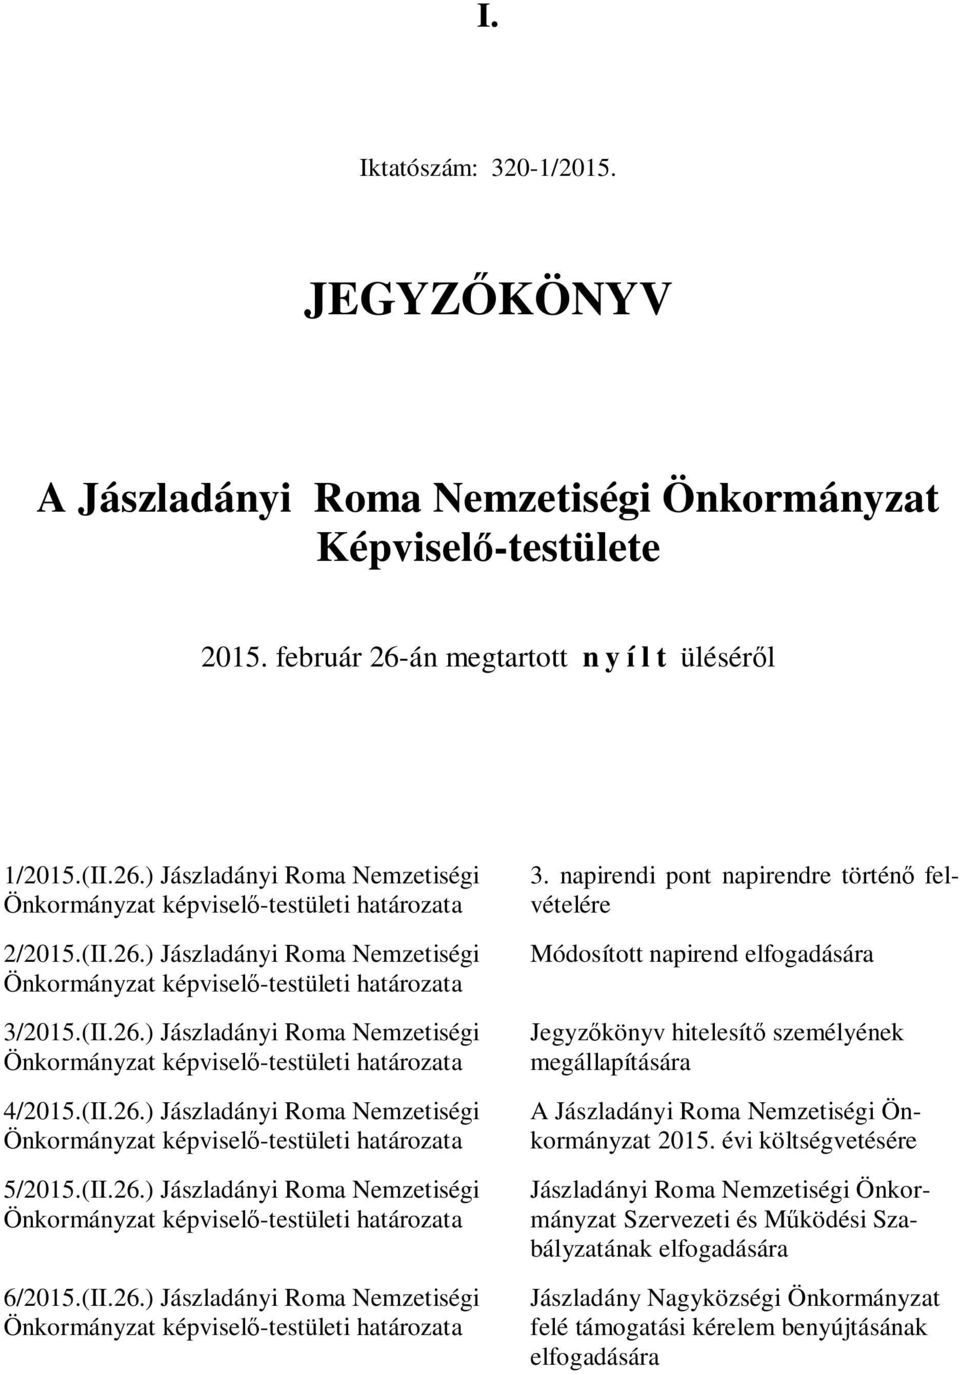 2015.(II.26.) Jászladányi Roma Nemzetiségi 4/2015.(II.26.) Jászladányi Roma Nemzetiségi 5/2015.(II.26.) Jászladányi Roma Nemzetiségi 6/2015.(II.26.) Jászladányi Roma Nemzetiségi 3.